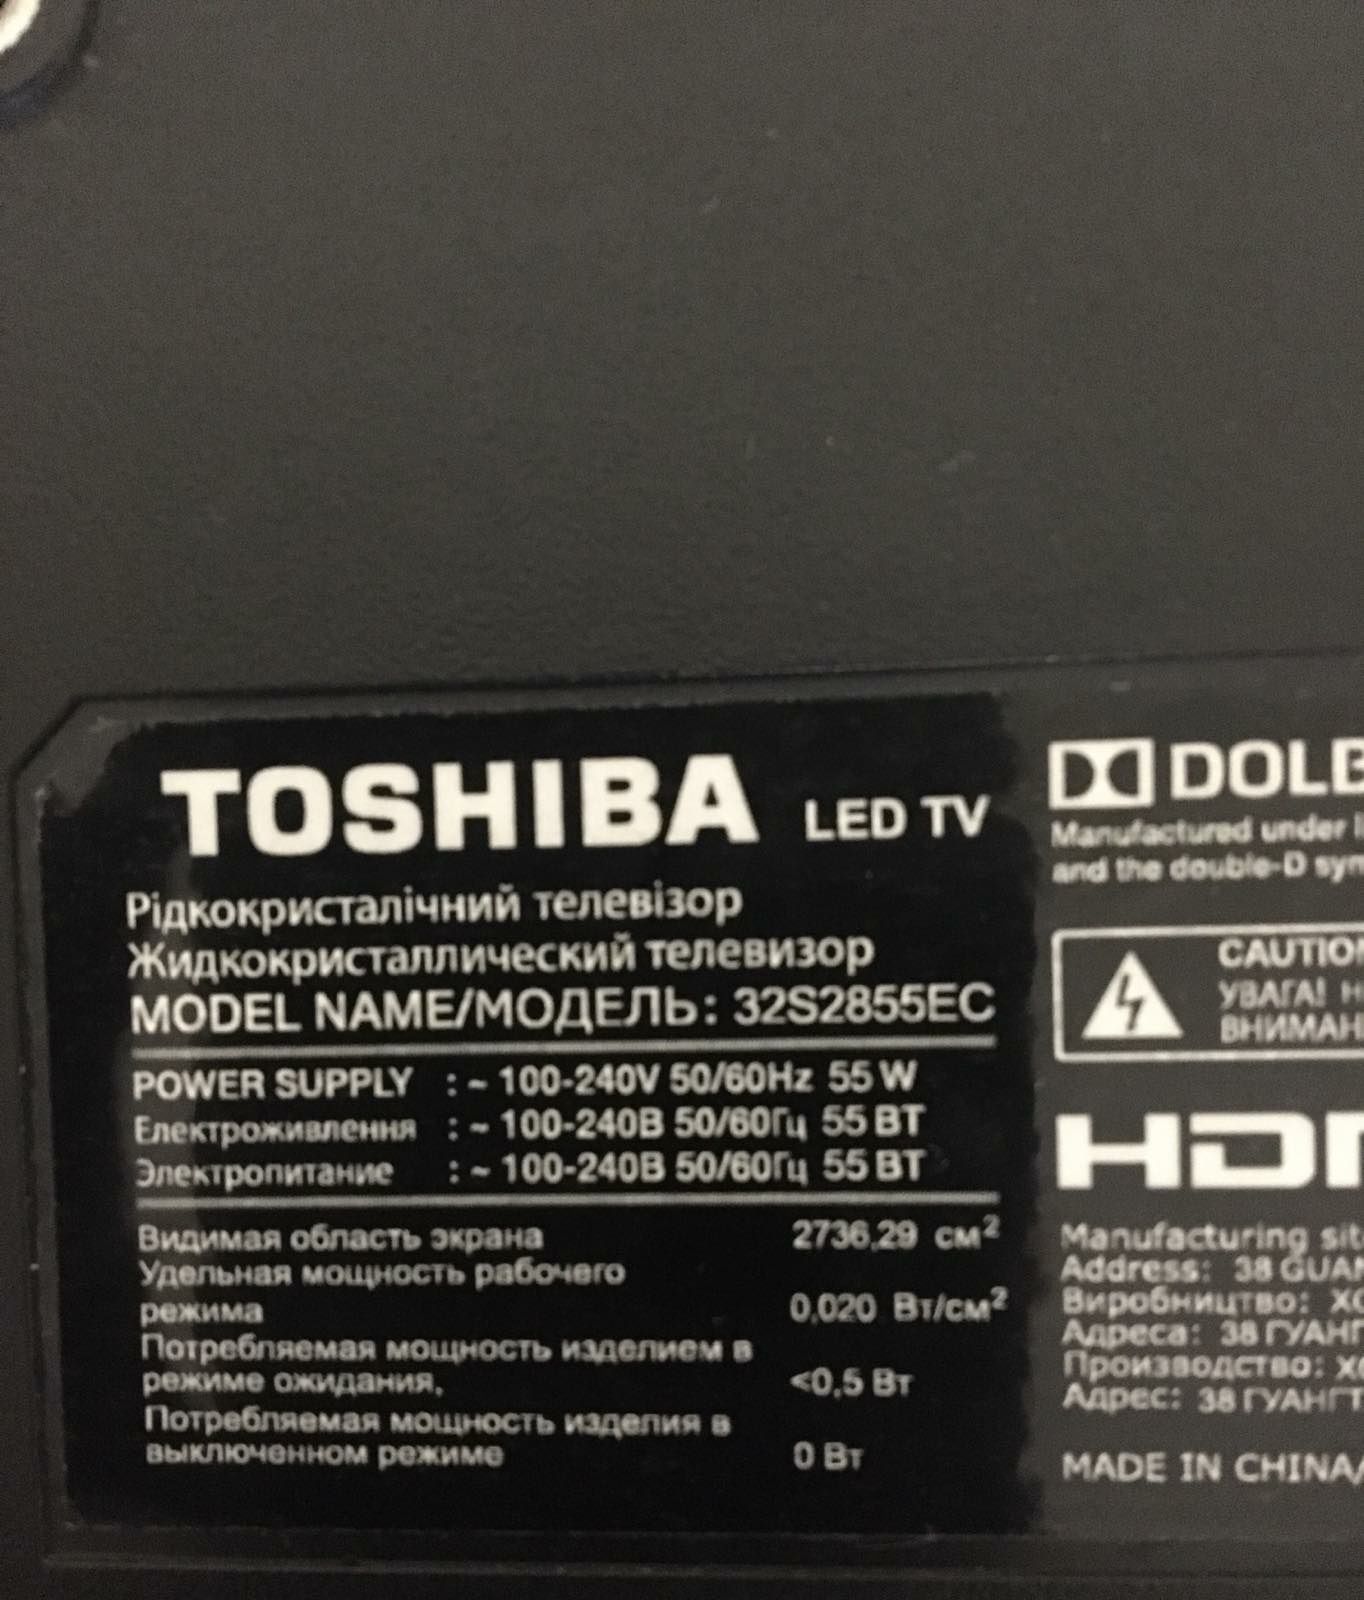 Toshiba 32S2855EC (82см)